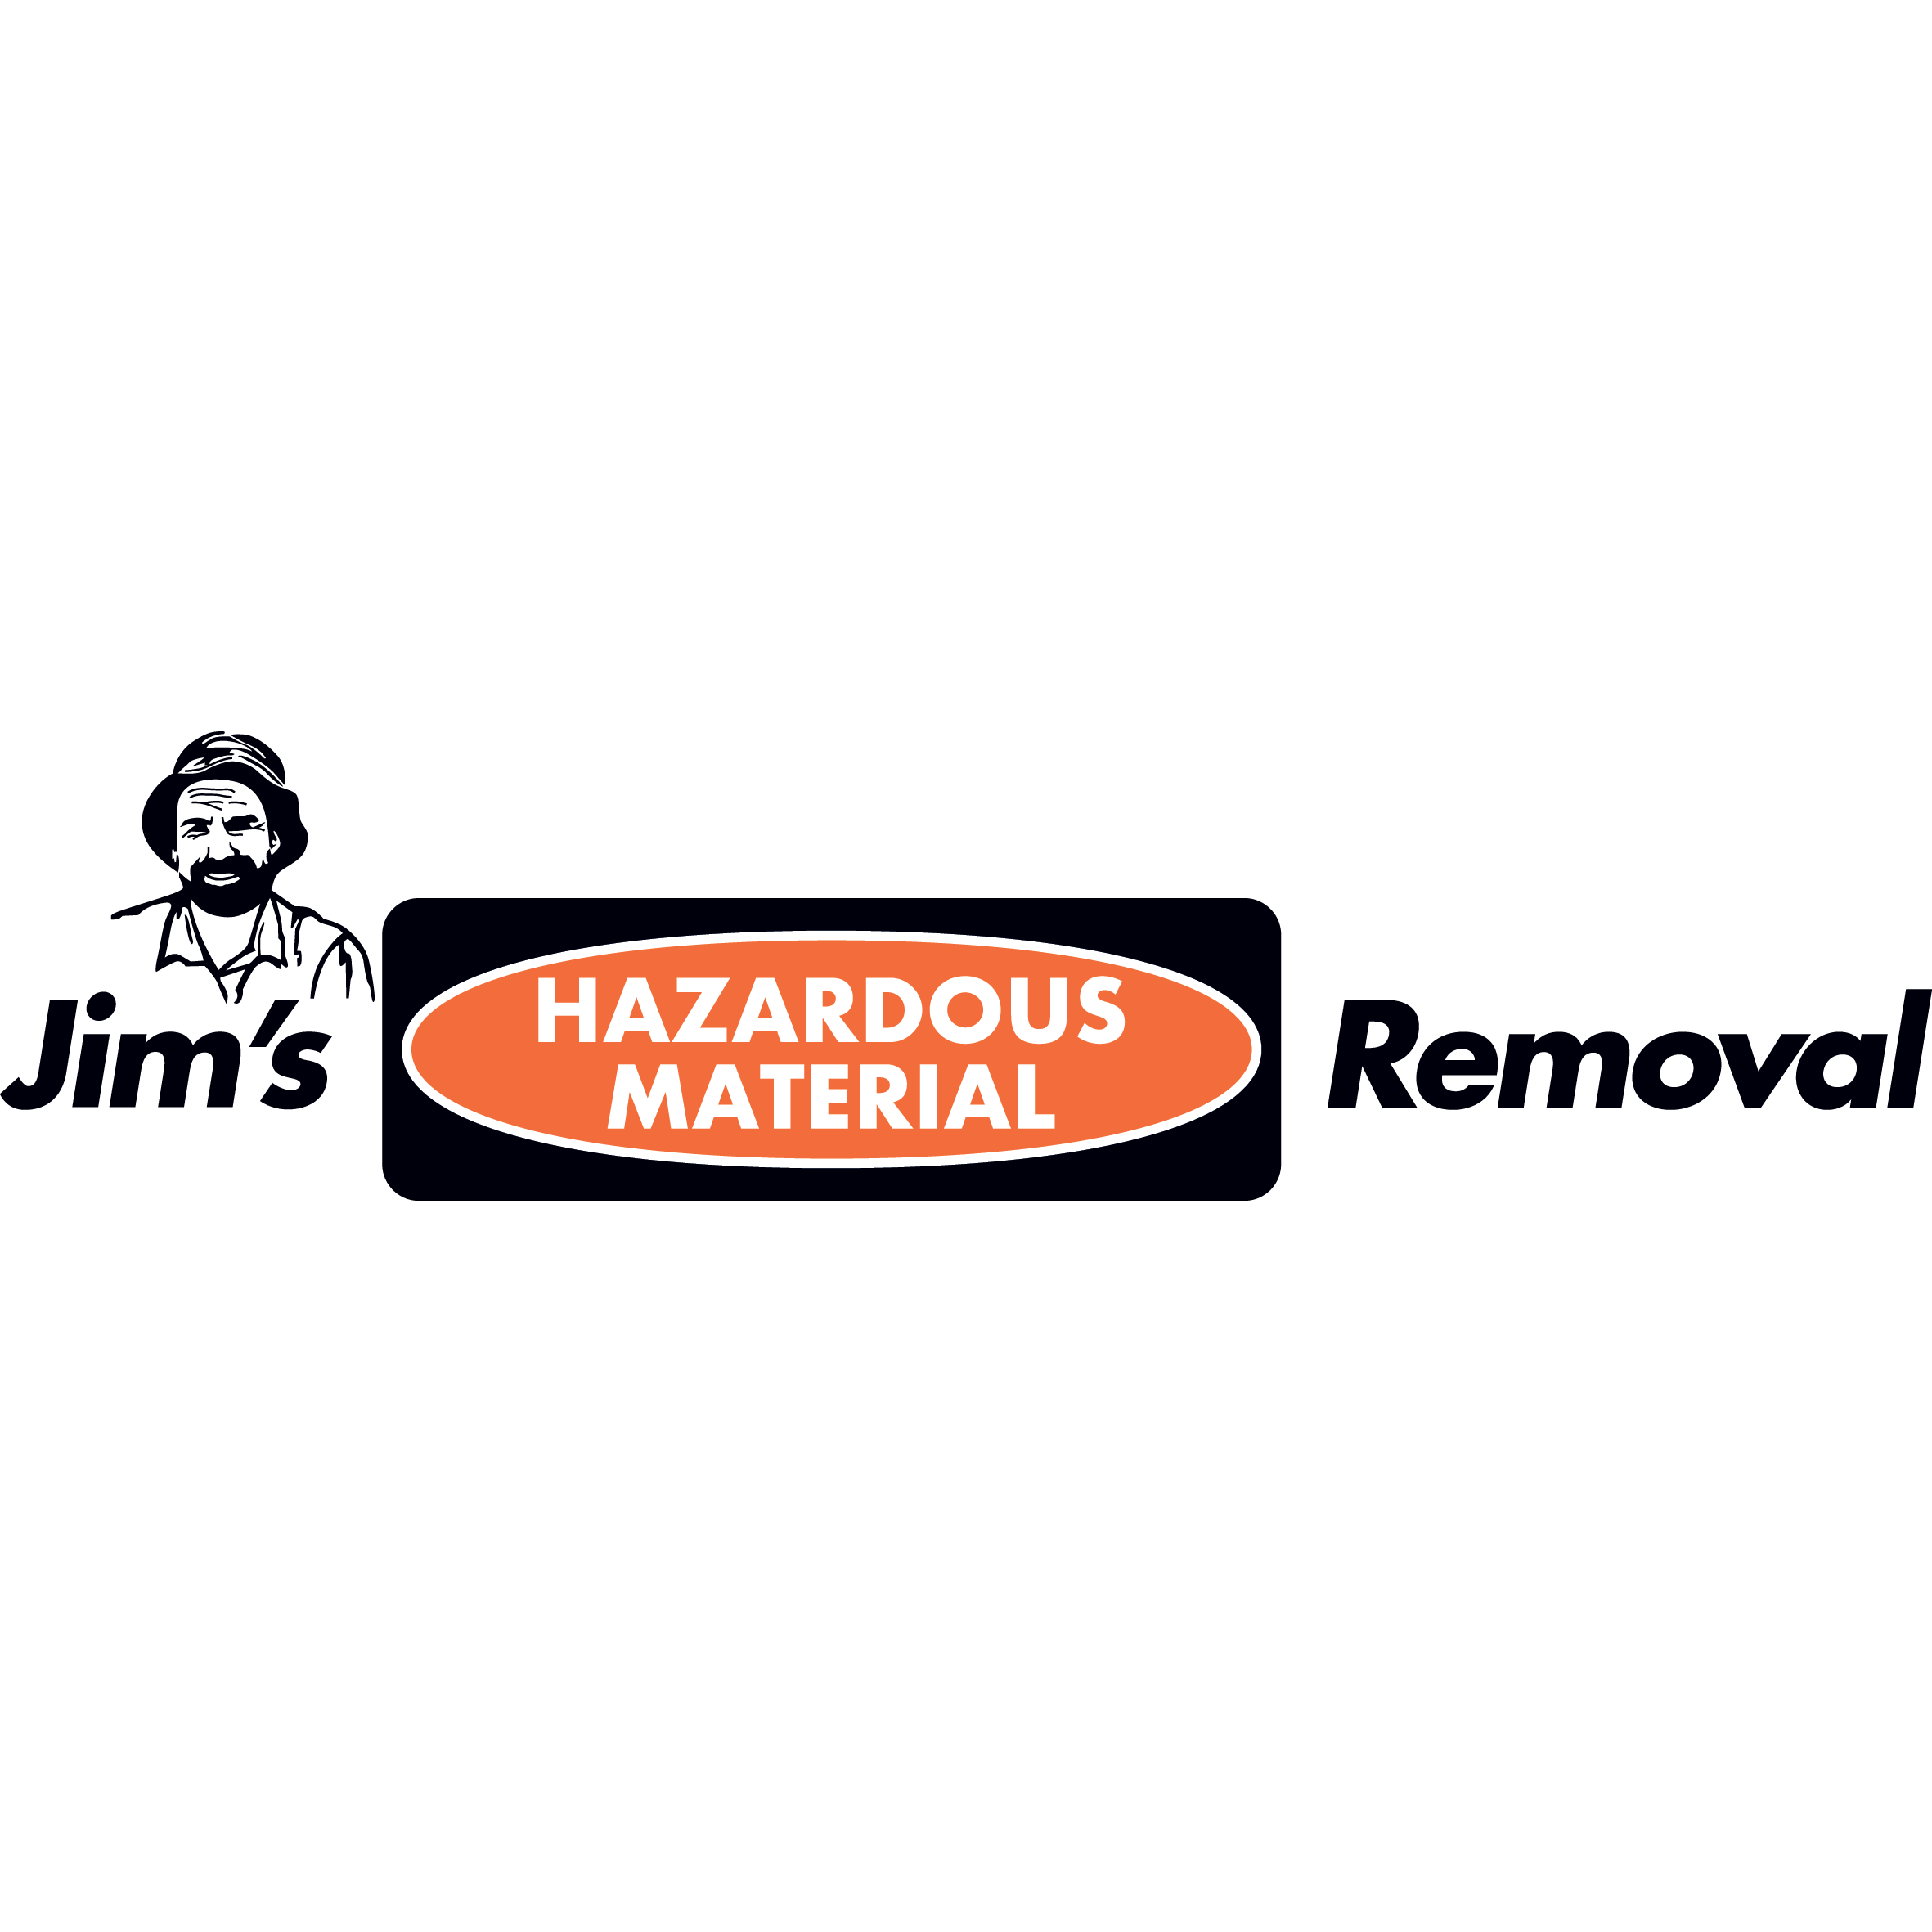 Jim's Hazardous Material Removal Shepparton Greater Shepparton